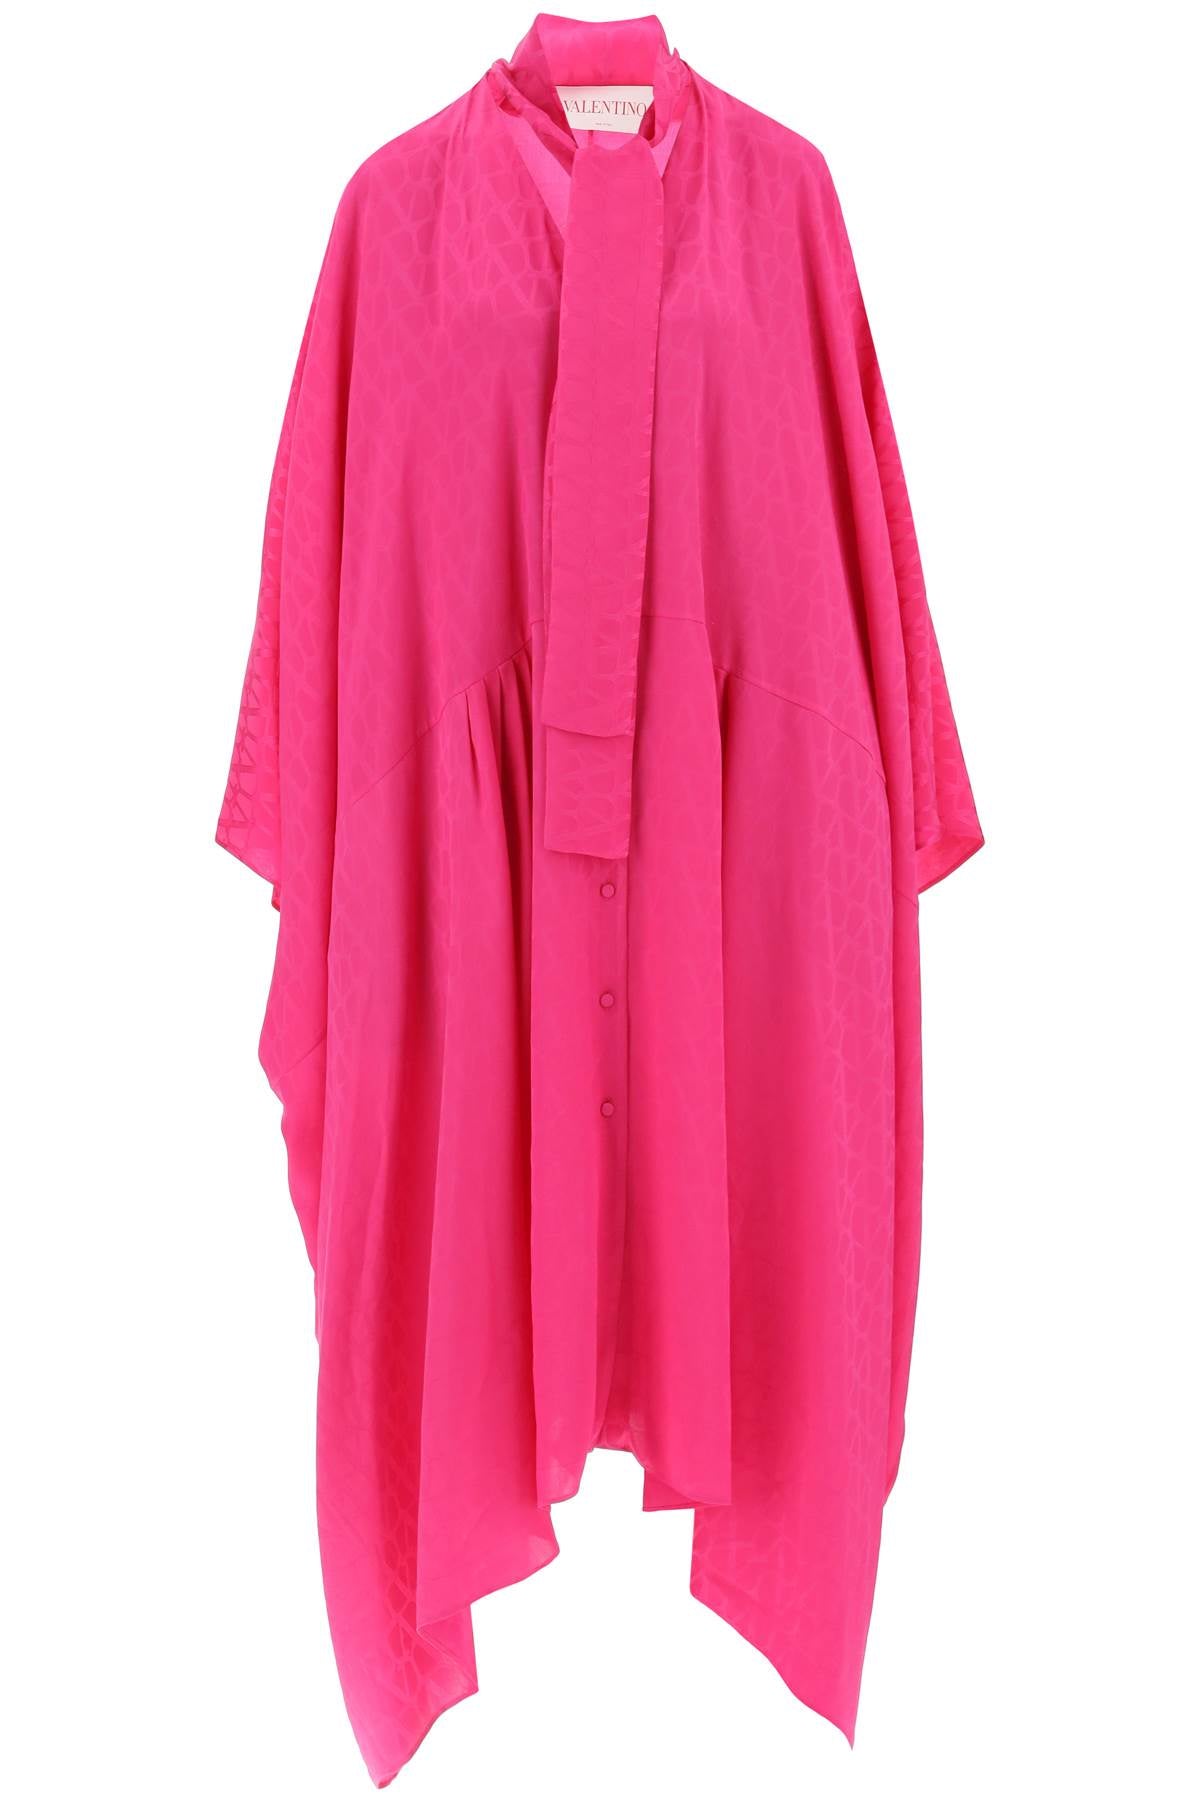 粉红色印花丝绸长款衬衫连衣裙